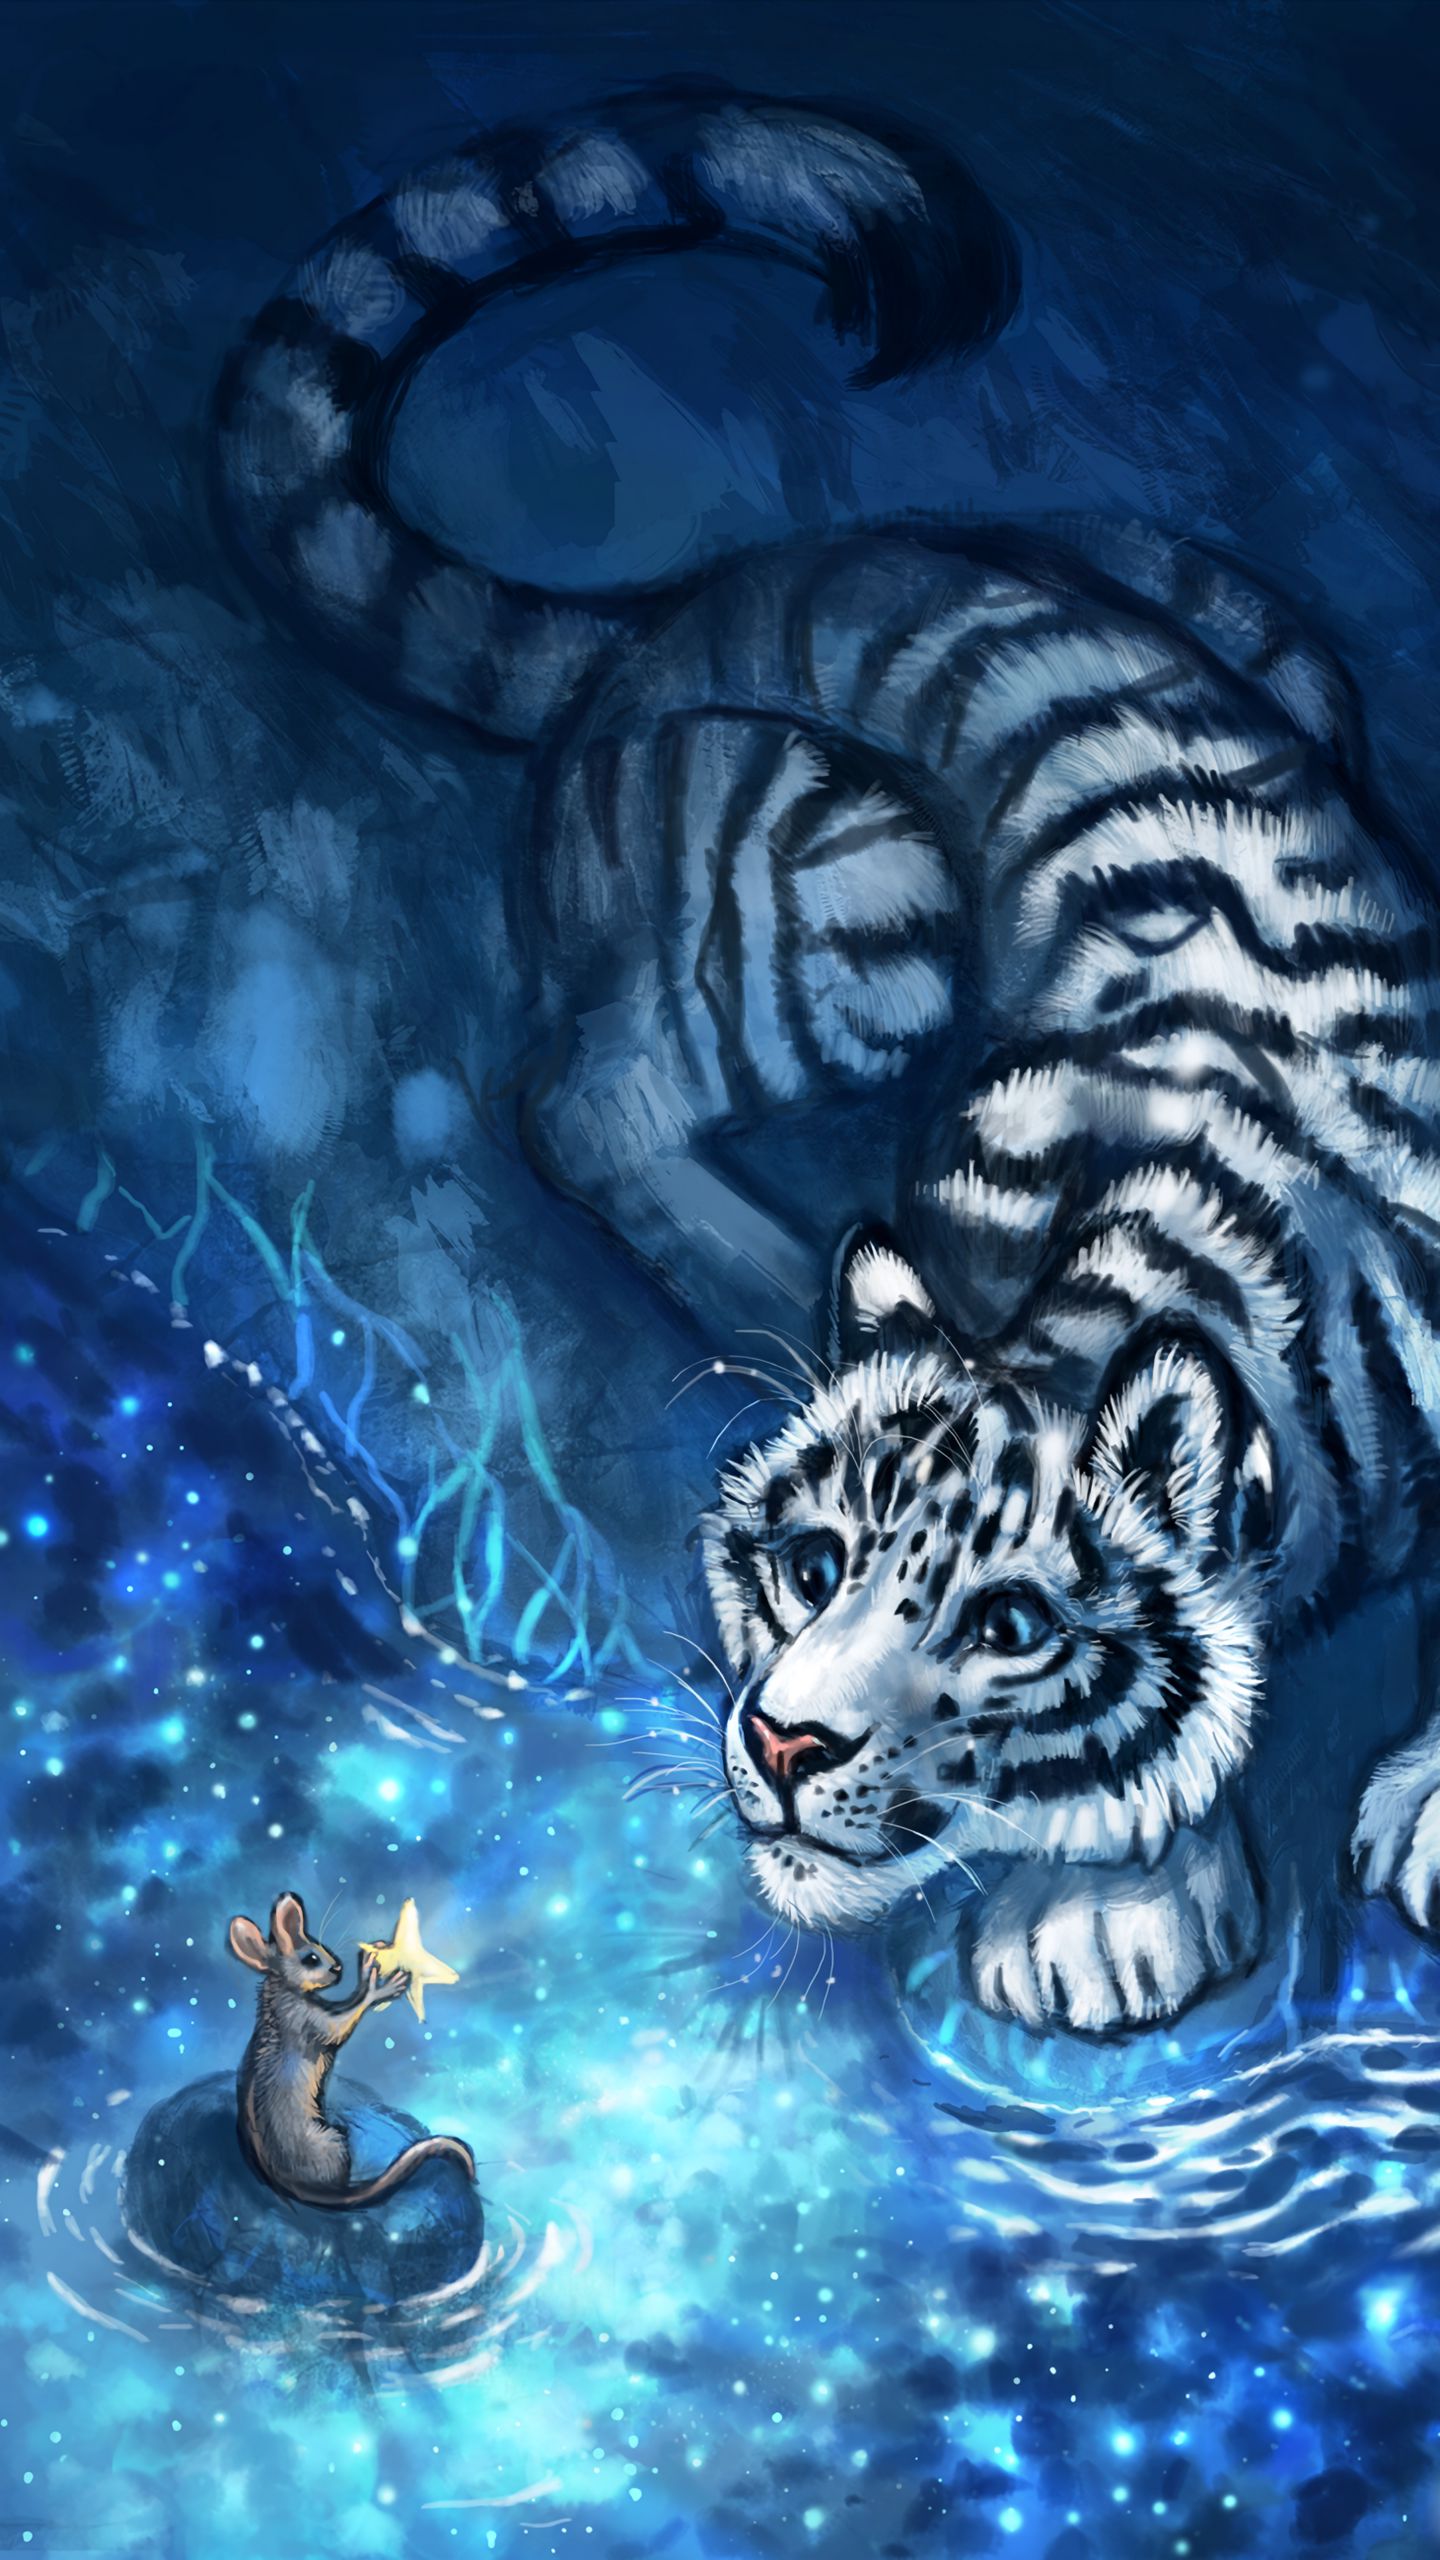 309-3096576_wallpaper-tiger-mouse-cub-art-animals-cute-cute